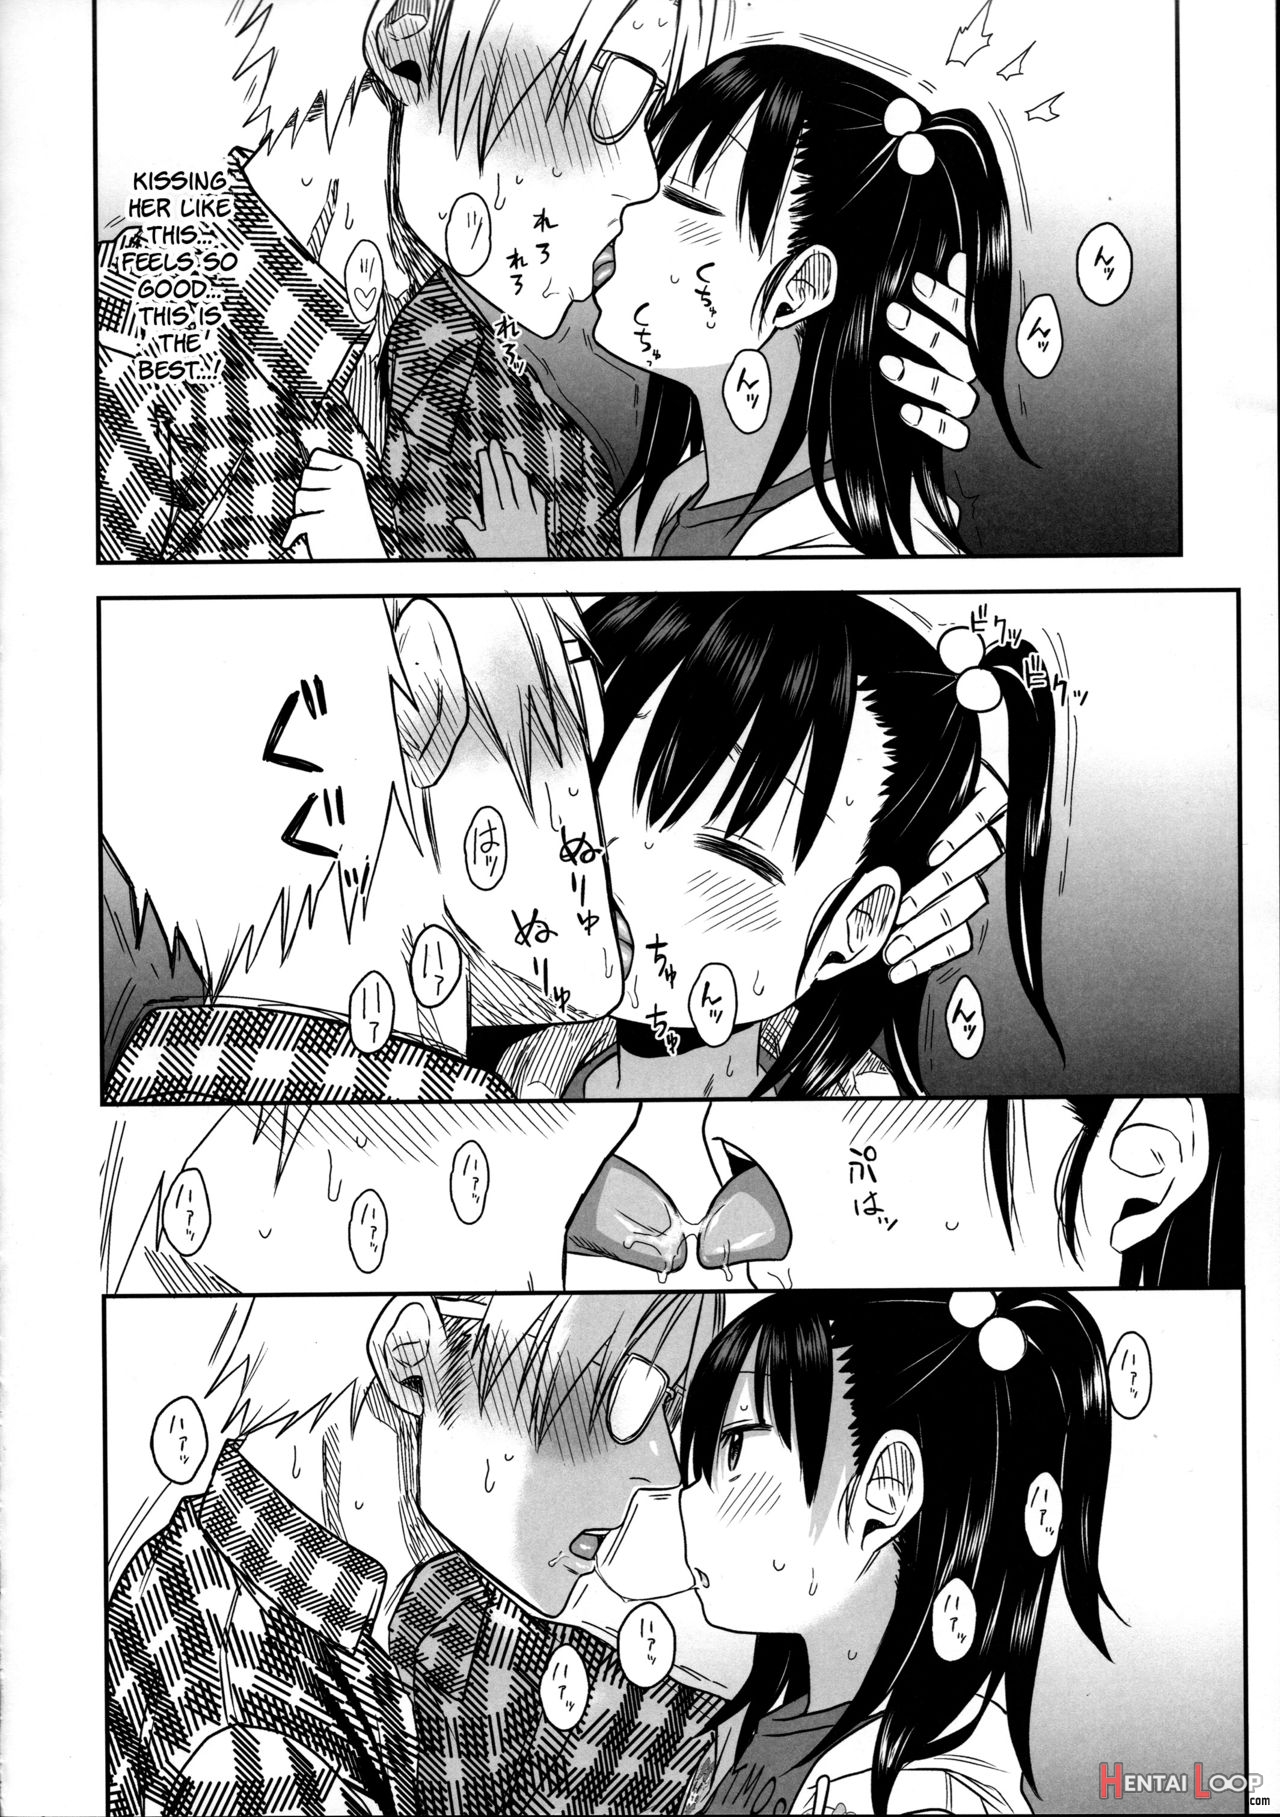 Tonari No Mako-chan Season 2 Vol. 2 page 20